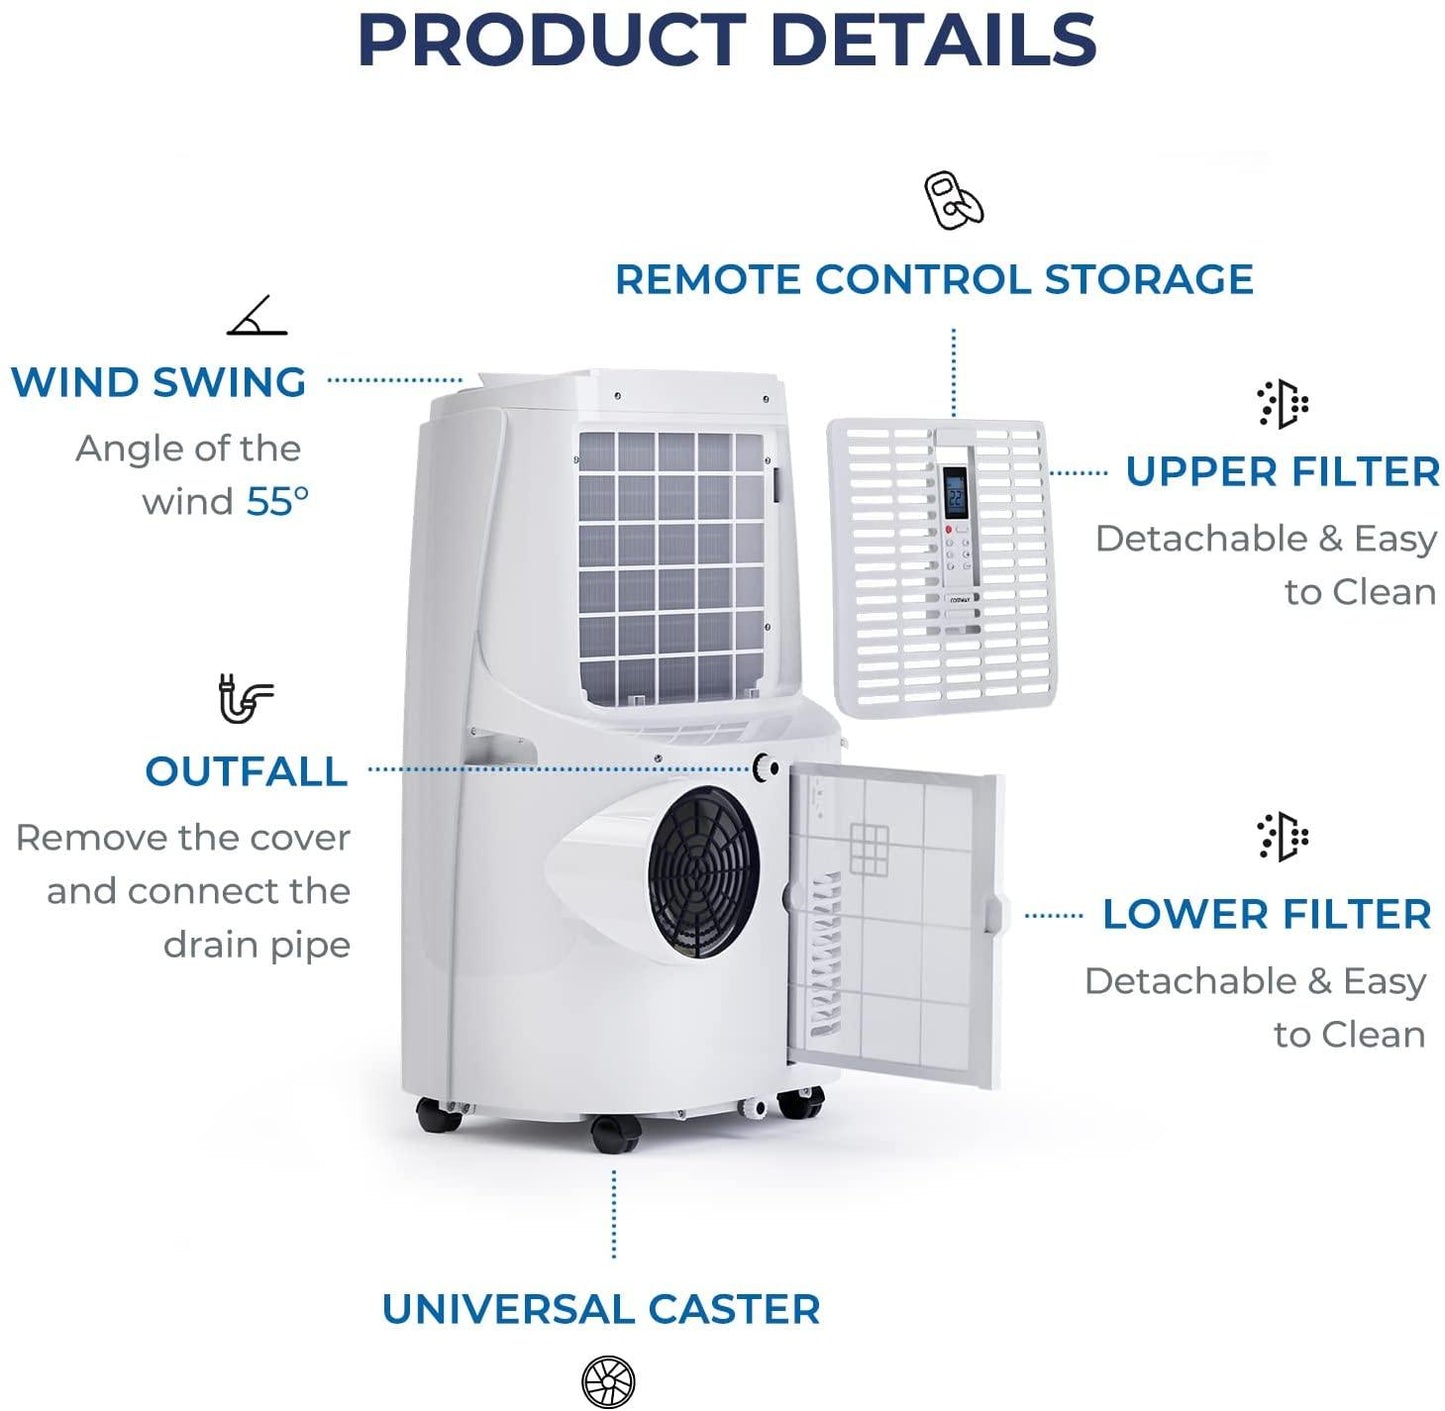 COSTWAY Portable Air Conditioner CPAC120000 - YOURISHOP.COM